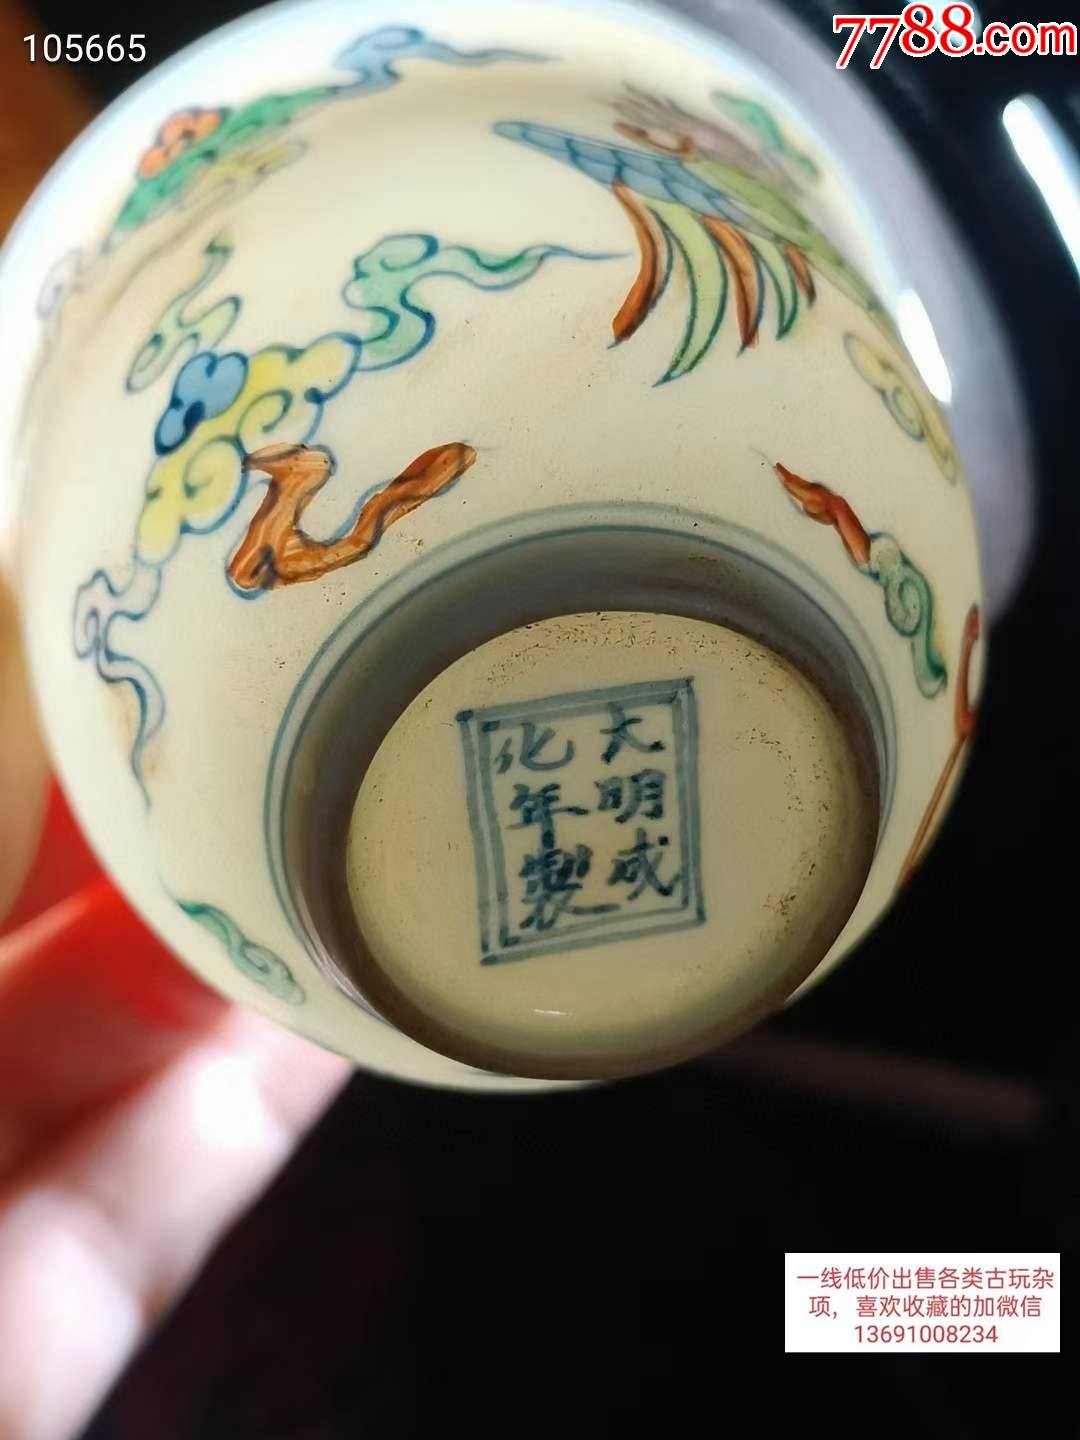 大明成化年制斗彩茶具一套,画工精美,器型规整,瓷质细腻,釉色漂亮